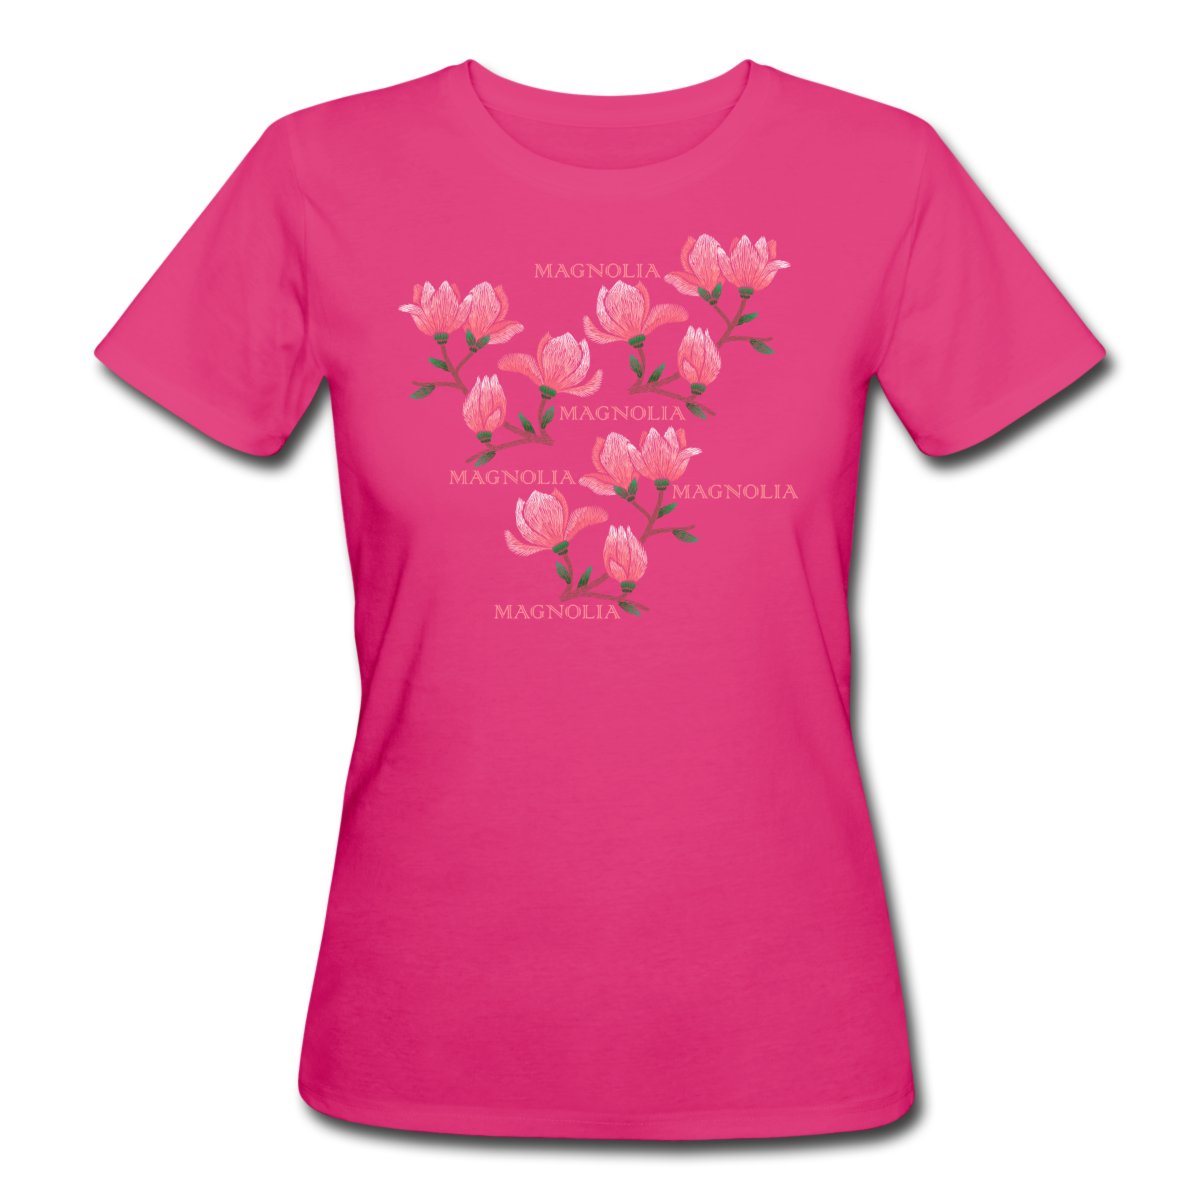 magnolia-ekologisk-t-shirt-dam-c.jpg